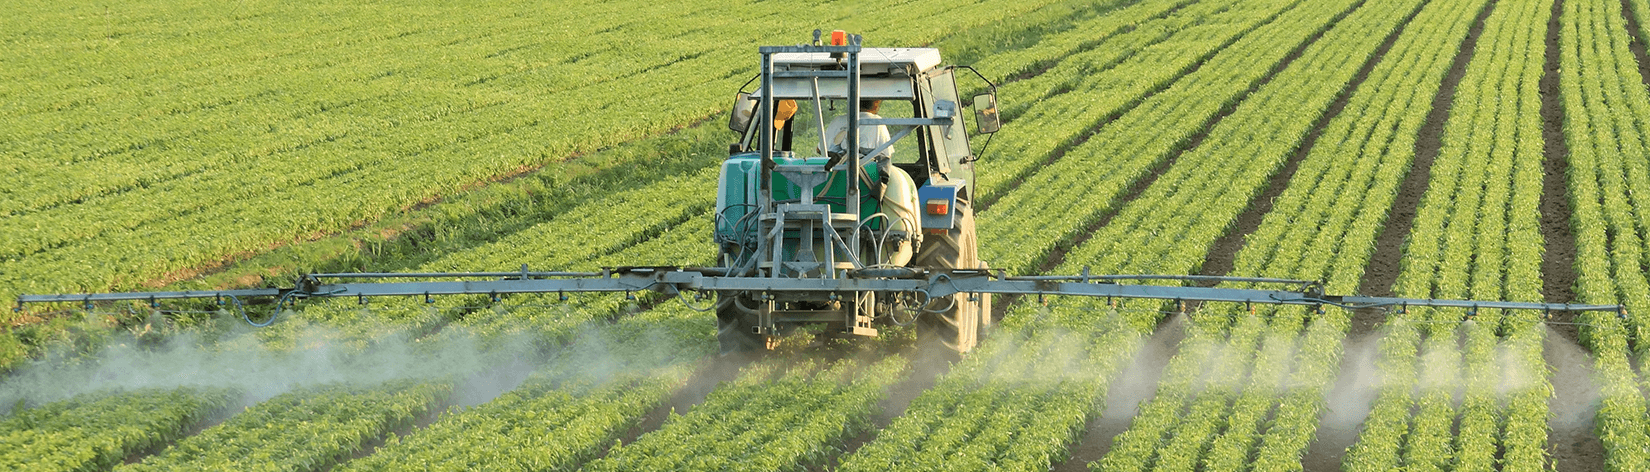 Pesticide Sprayer - Photo by Texas Dept. of Ag